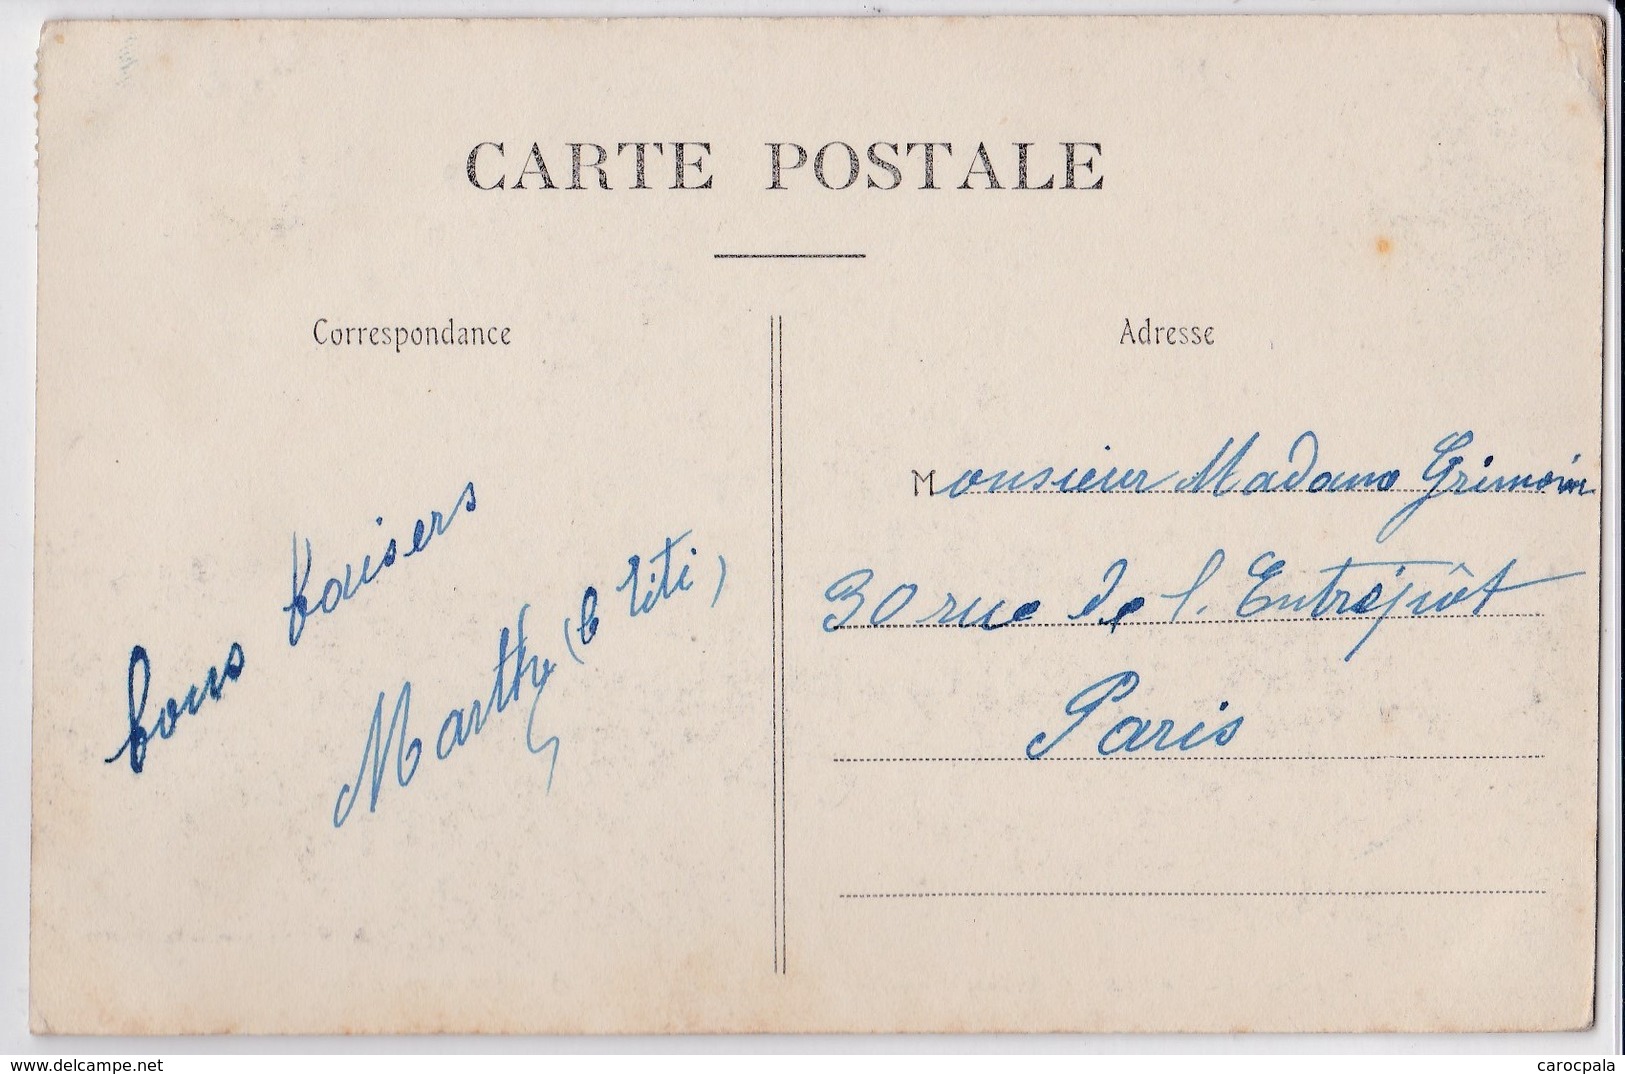 Carte 1911 CHATEAU PORCIEN / LA BRIQUETERIE (usine , Industrie , Métier) - Chateau Porcien